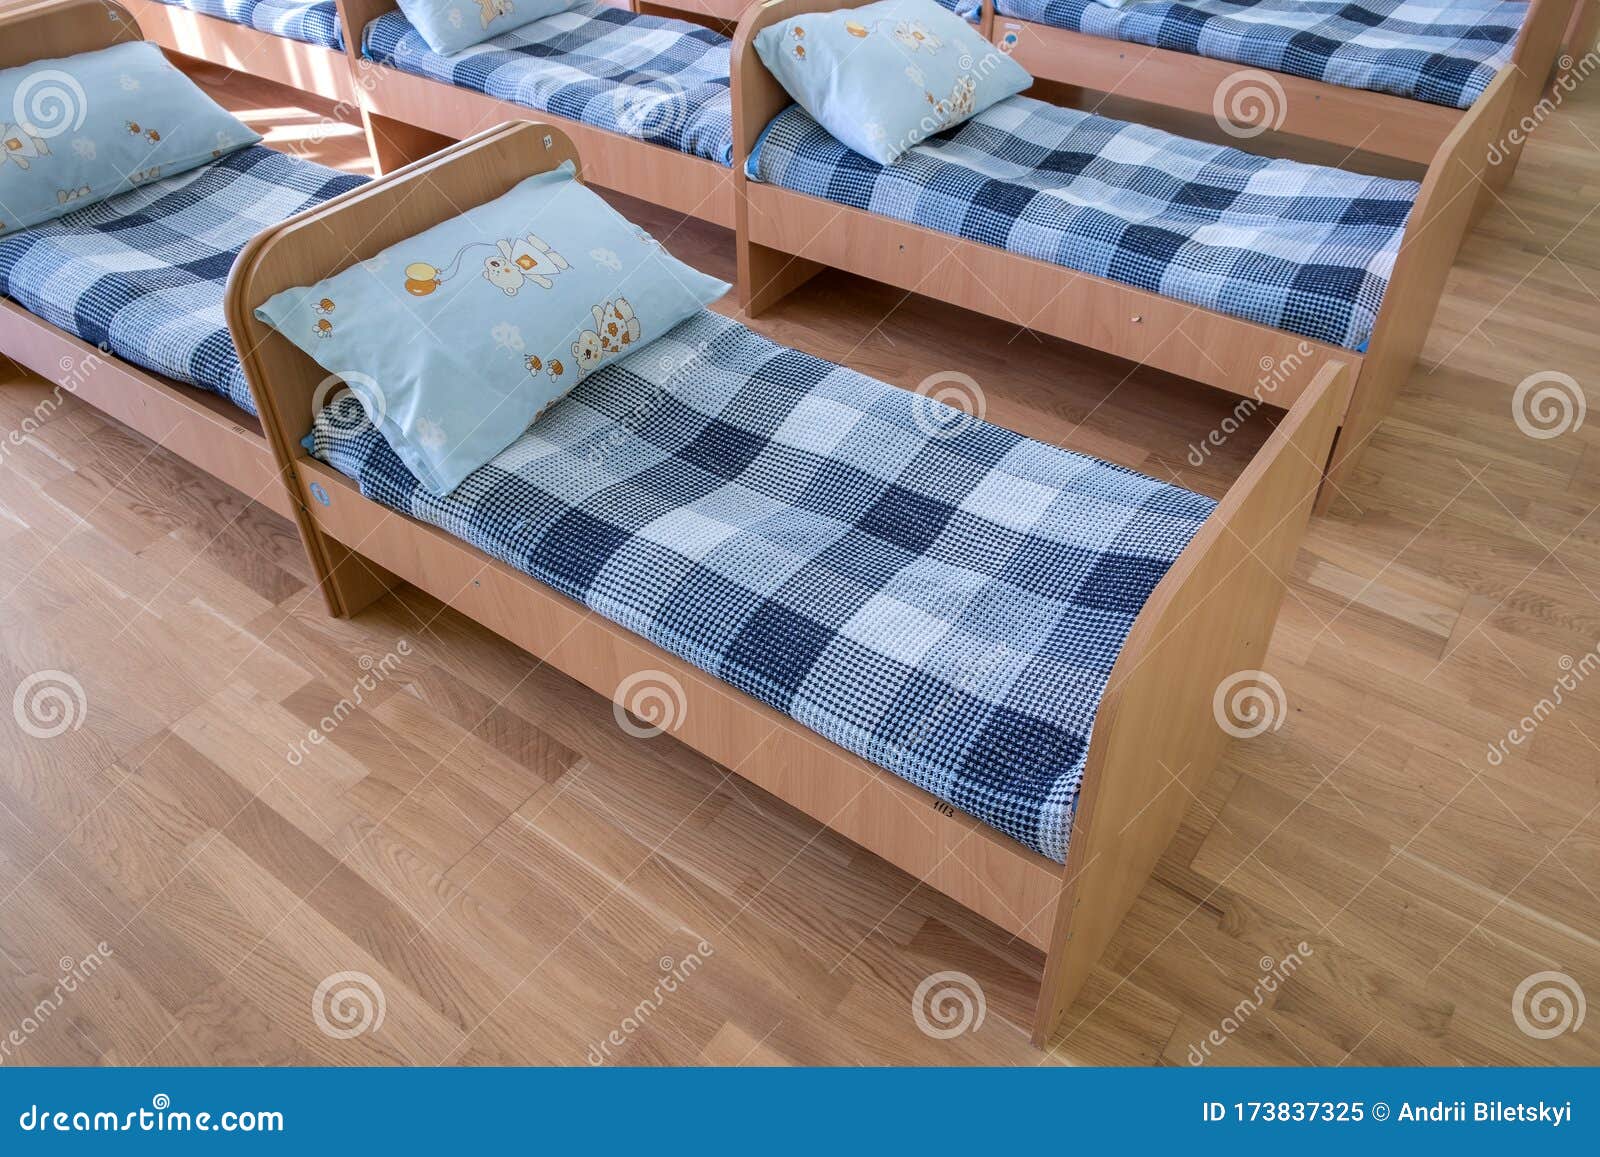 preschool beds